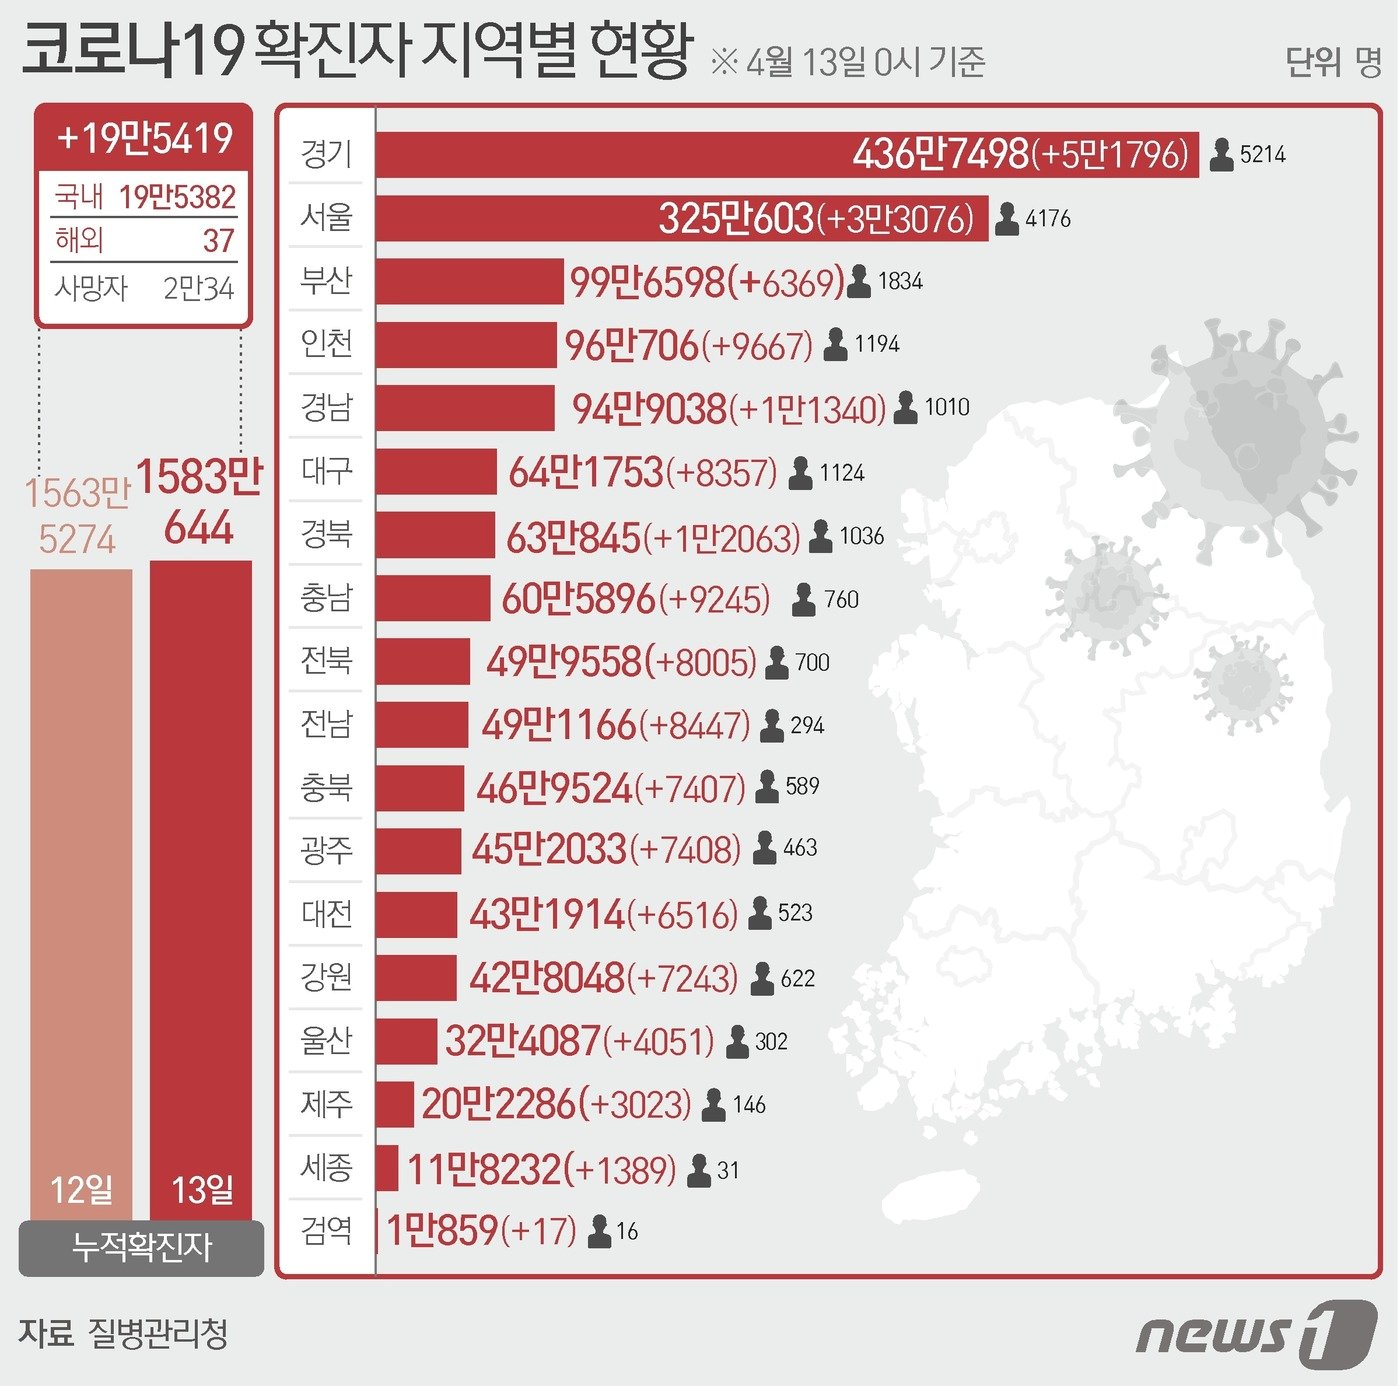 13일 질병관리청 중앙방역대책본부에 따르면 이날 0시 기준 국내 코로나19 누적 확진자는 19만5419명 증가한 1583만644명으로 나타났다. 신규 확진자 19만5419명&#40;해외유입 37명 포함&#41;의 신고 지역은 서울 3만3076명, 부산 6369명, 대구 8357명, 인천 9667명, 광주 7408명&#40;해외 5명&#41;, 대전 6516명, 울산 4051명, 세종 1389명, 경기 5만1796명, 강원 7243명, 충북 7407명, 충남 9245명, 전북 8005명&#40;해외 3명&#41;, 전남 8447명&#40;해외 1명&#41;, 경북 1만2063명&#40;해외 3명&#41;, 경남 1만1340명&#40;해외 4명&#41;, 제주 3023명, 검역 과정 17명이다 ⓒ News1 윤주희 디자이너